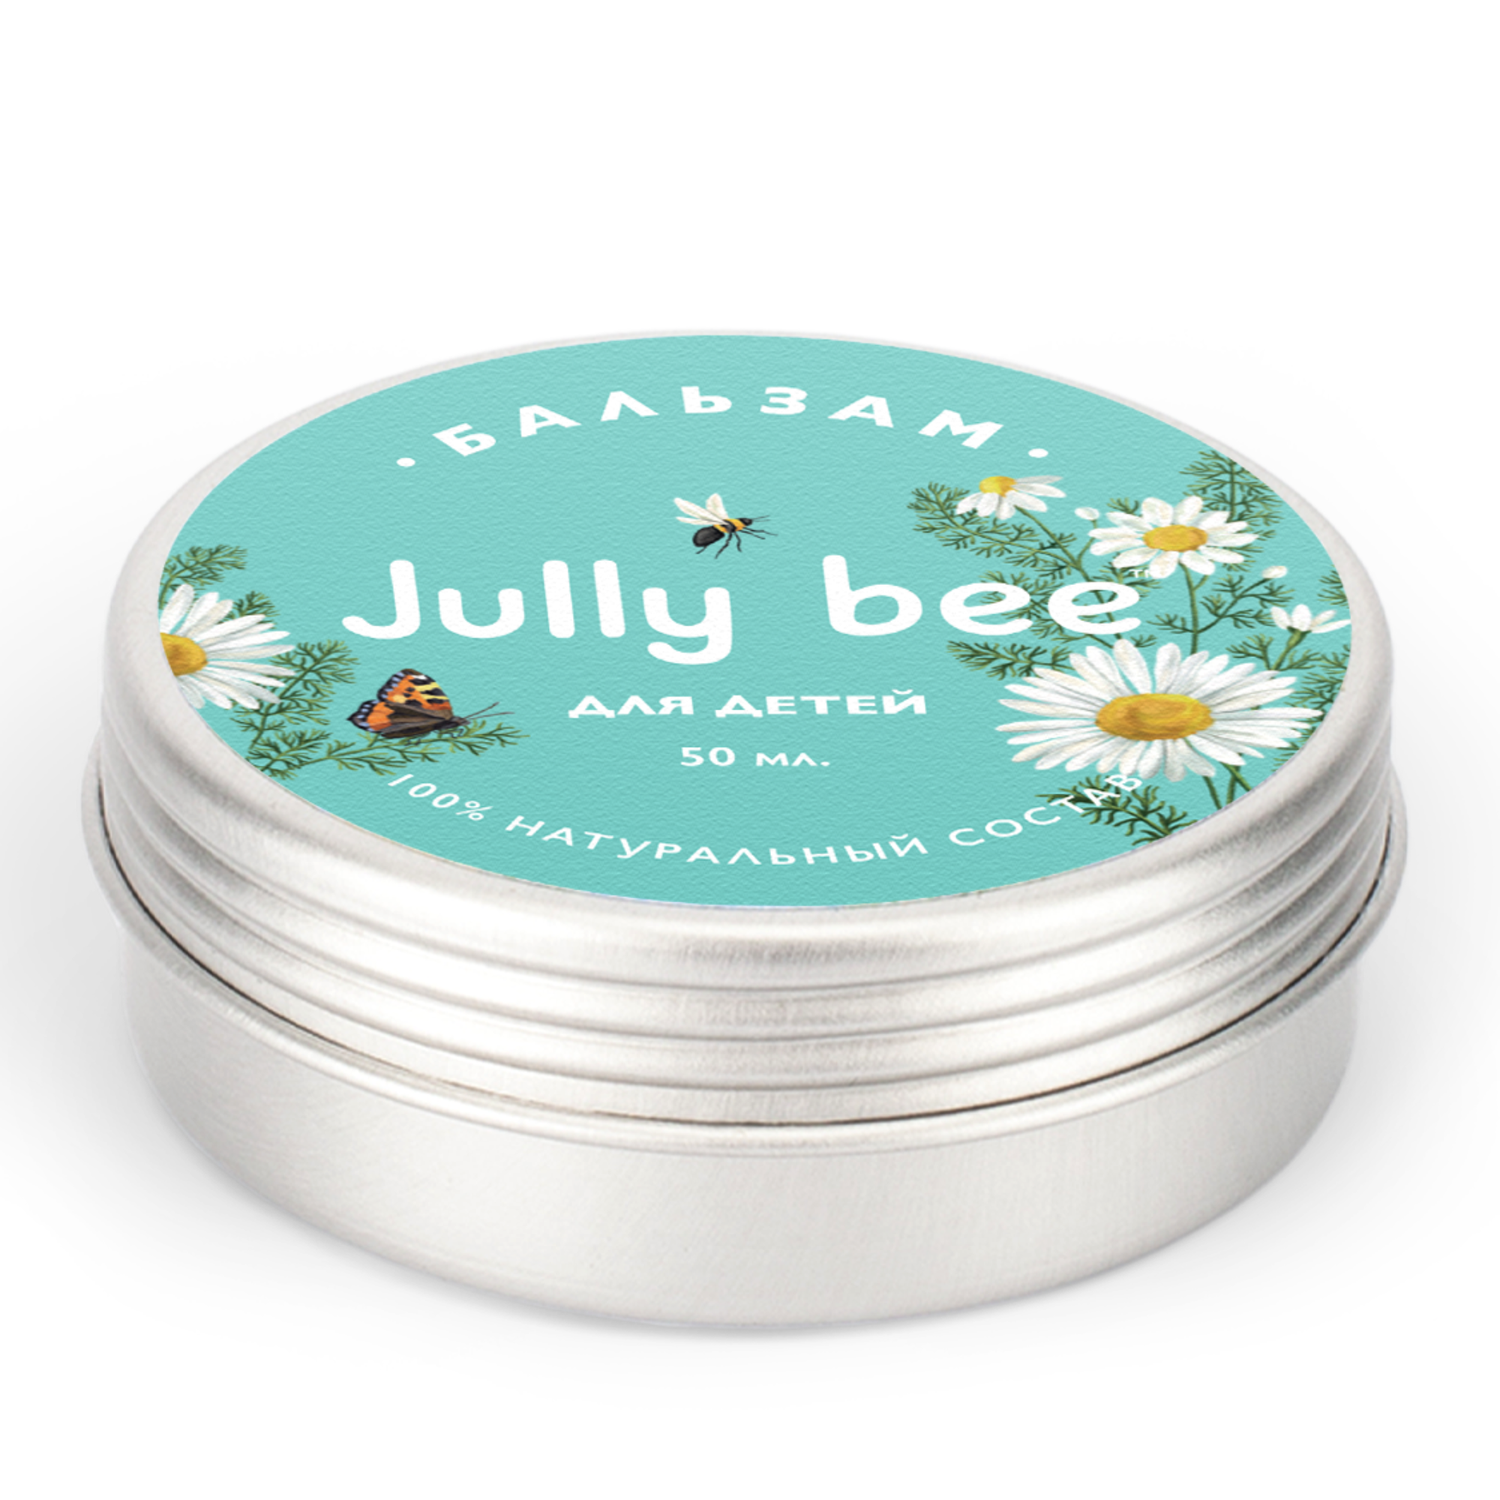 Бальзам Jully Bee для детей с экстрактом ромашки на основе пчелиного воска 50 мл - фото 2